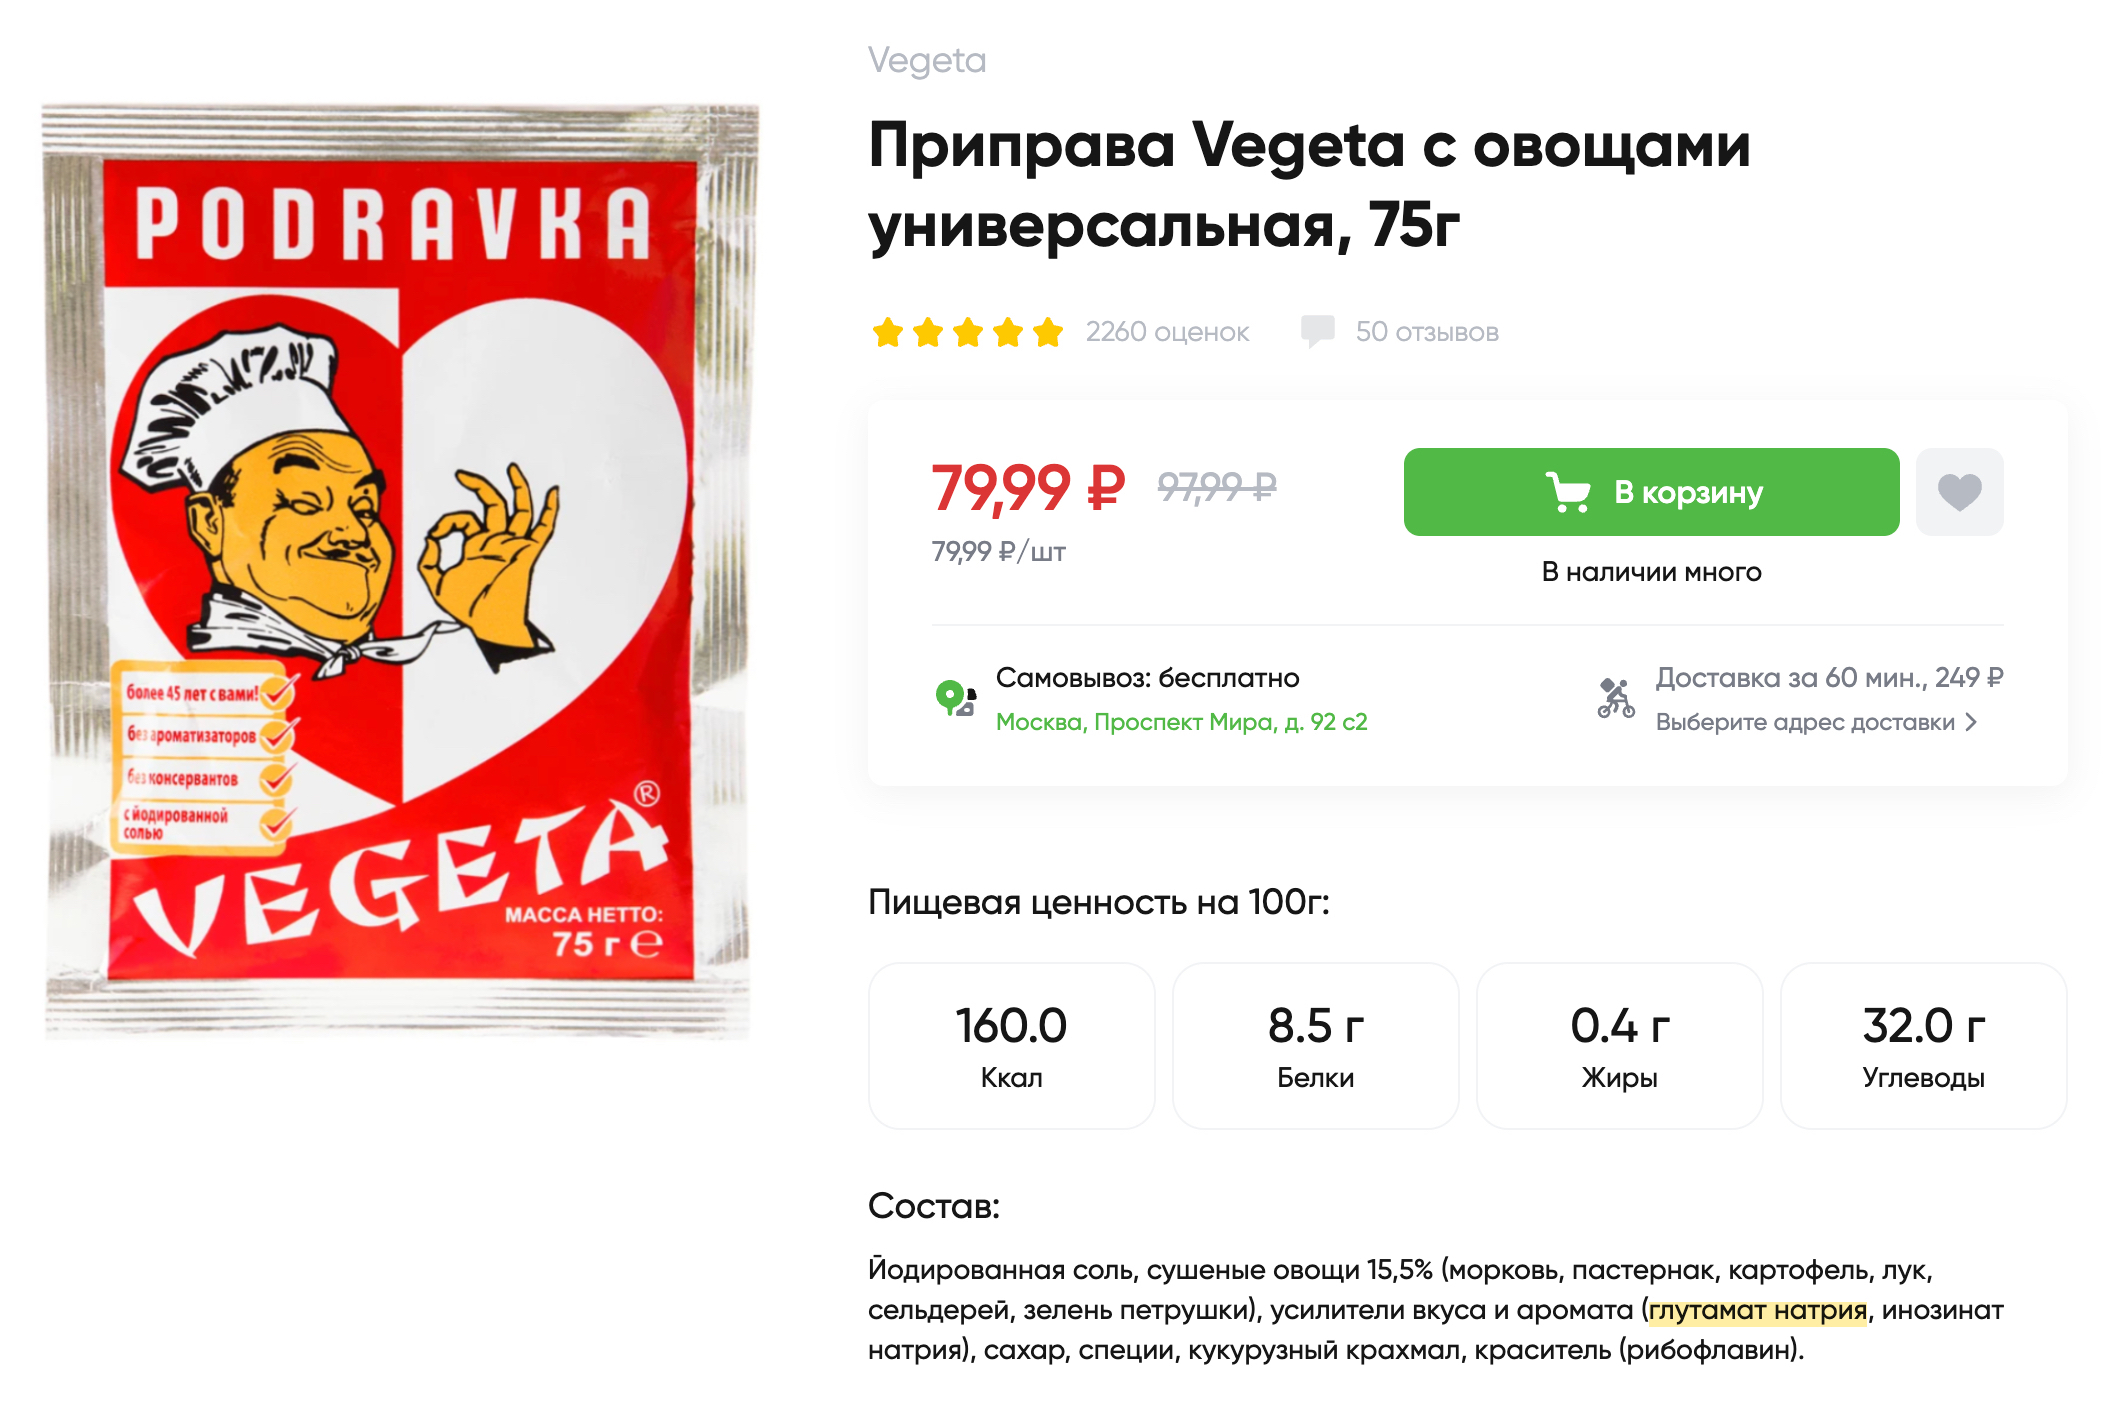 Популярная хорватская приправа «Вегетта» содержит глутамат натрия. Источник: perekrestok.ru